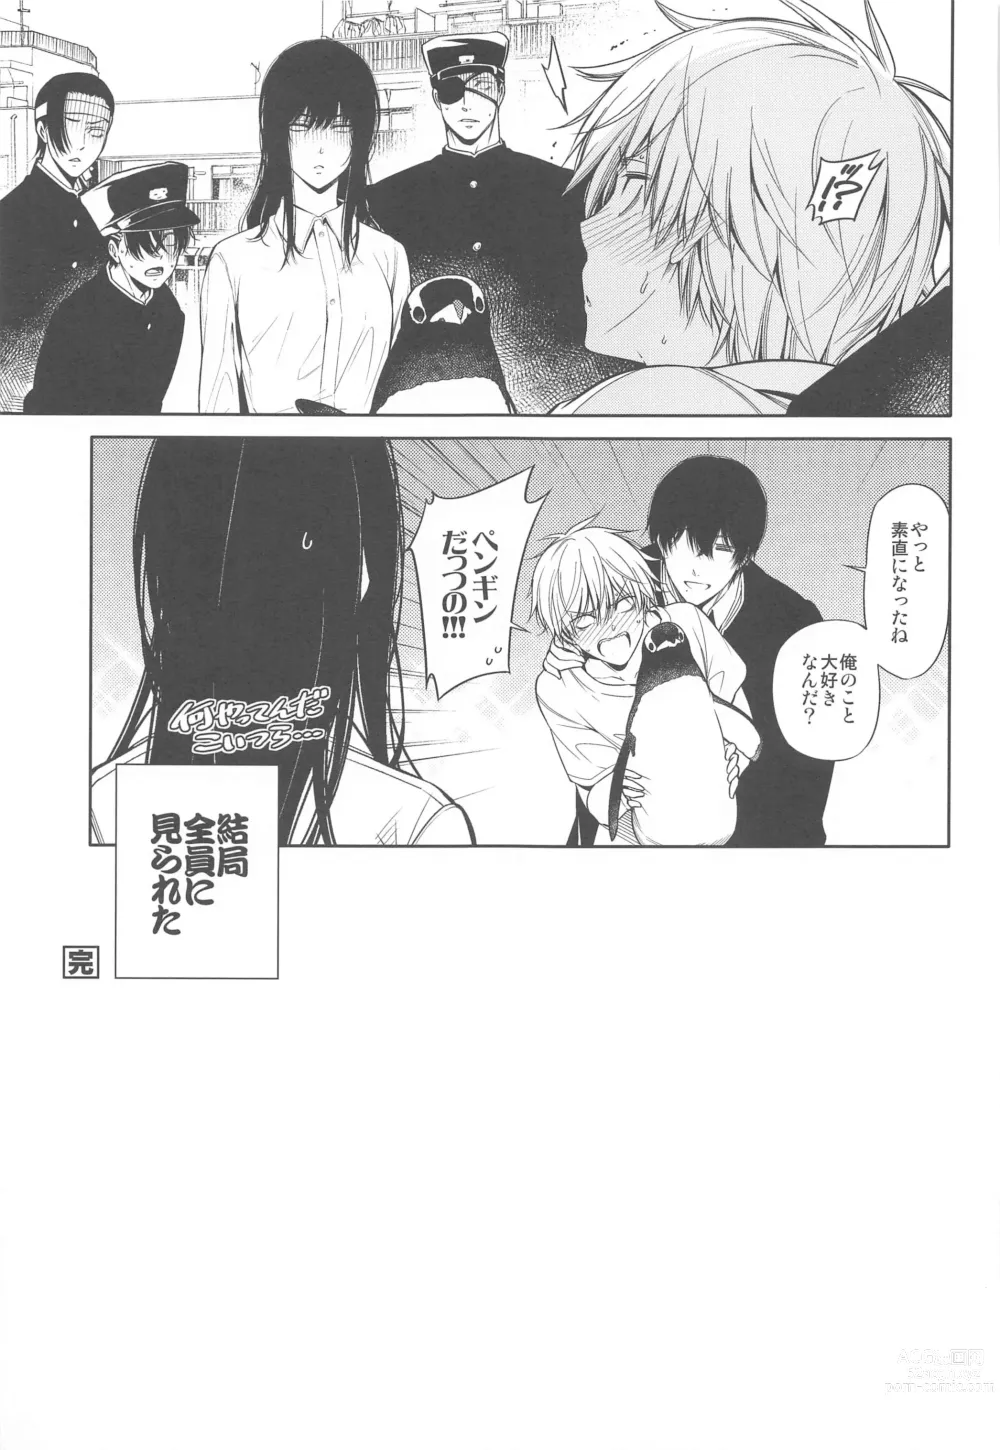 Page 16 of doujinshi Suki ni Natte yo, Denji-kun.